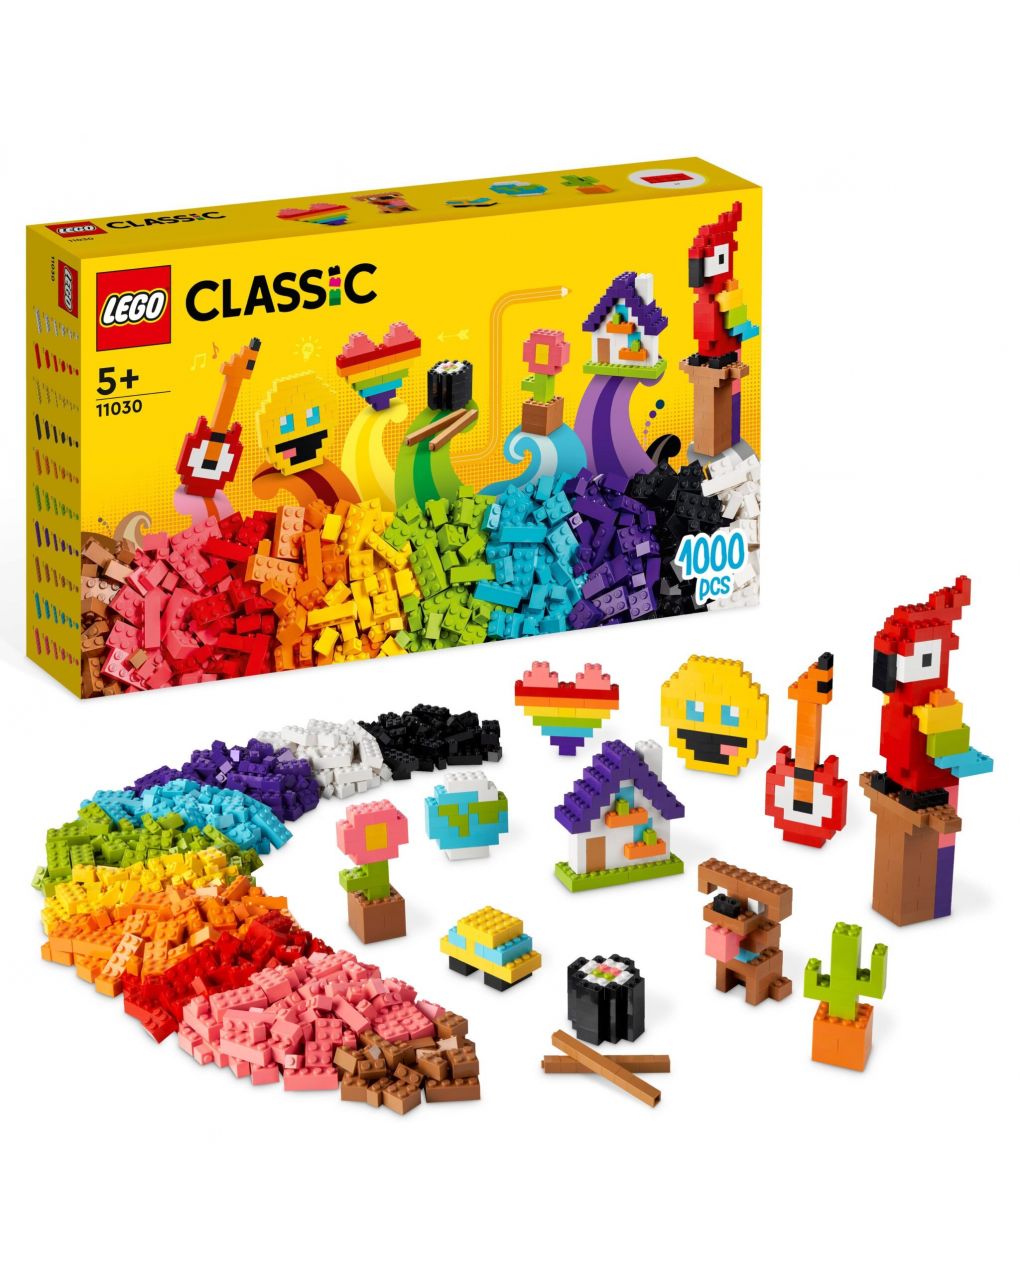 Ladrillos a montones - lego classic - LEGO